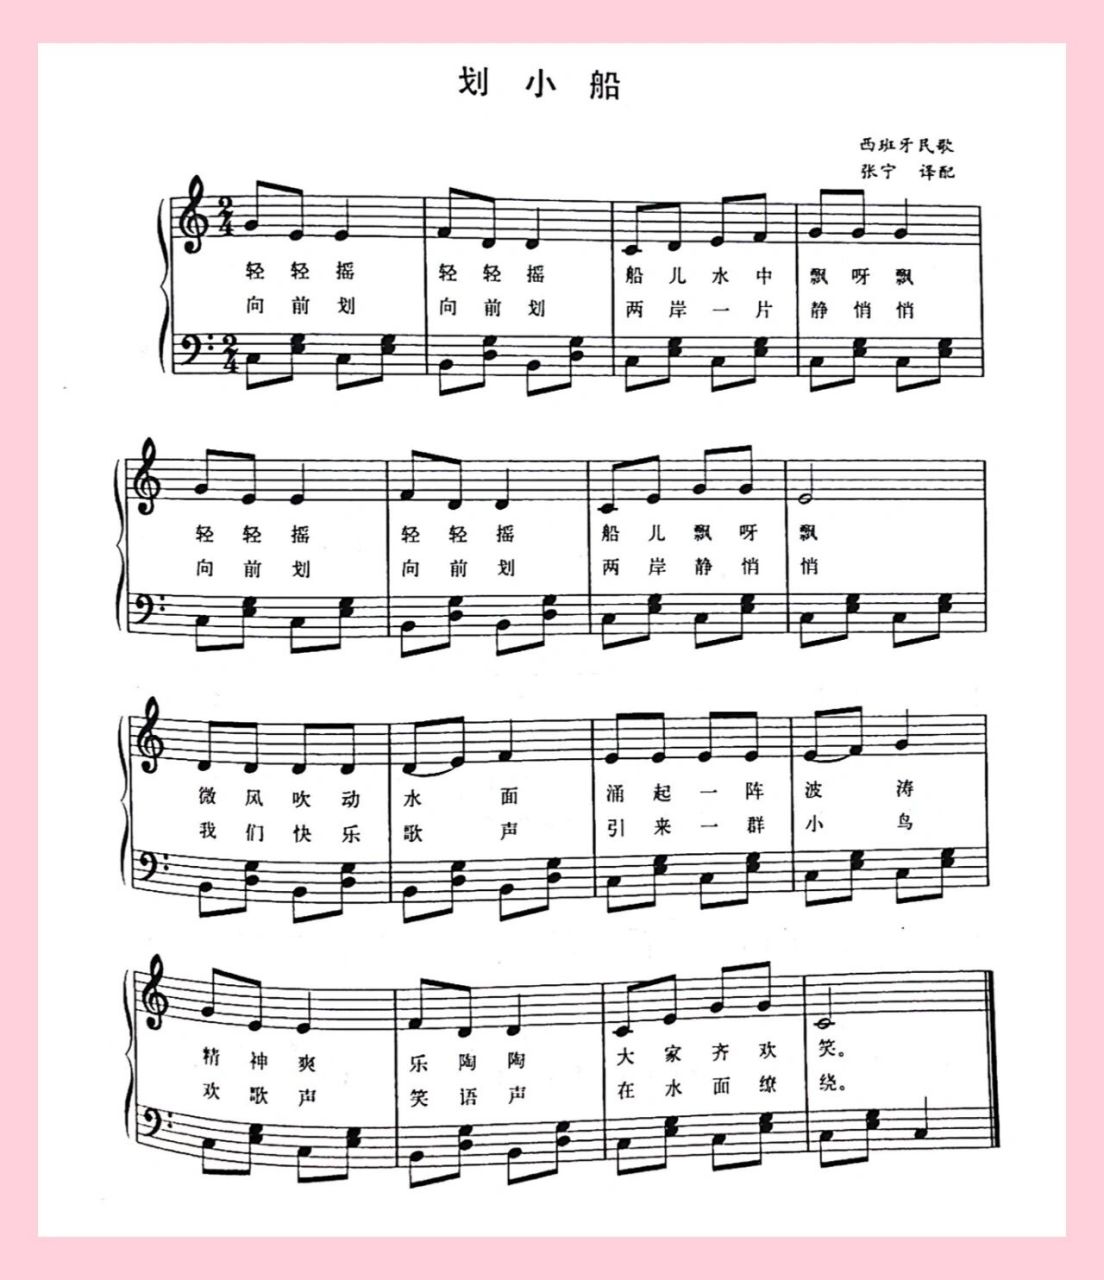 【钢琴】弹奏儿歌:《划小船》简谱及五线谱 《划小船》这个旋律在小汤